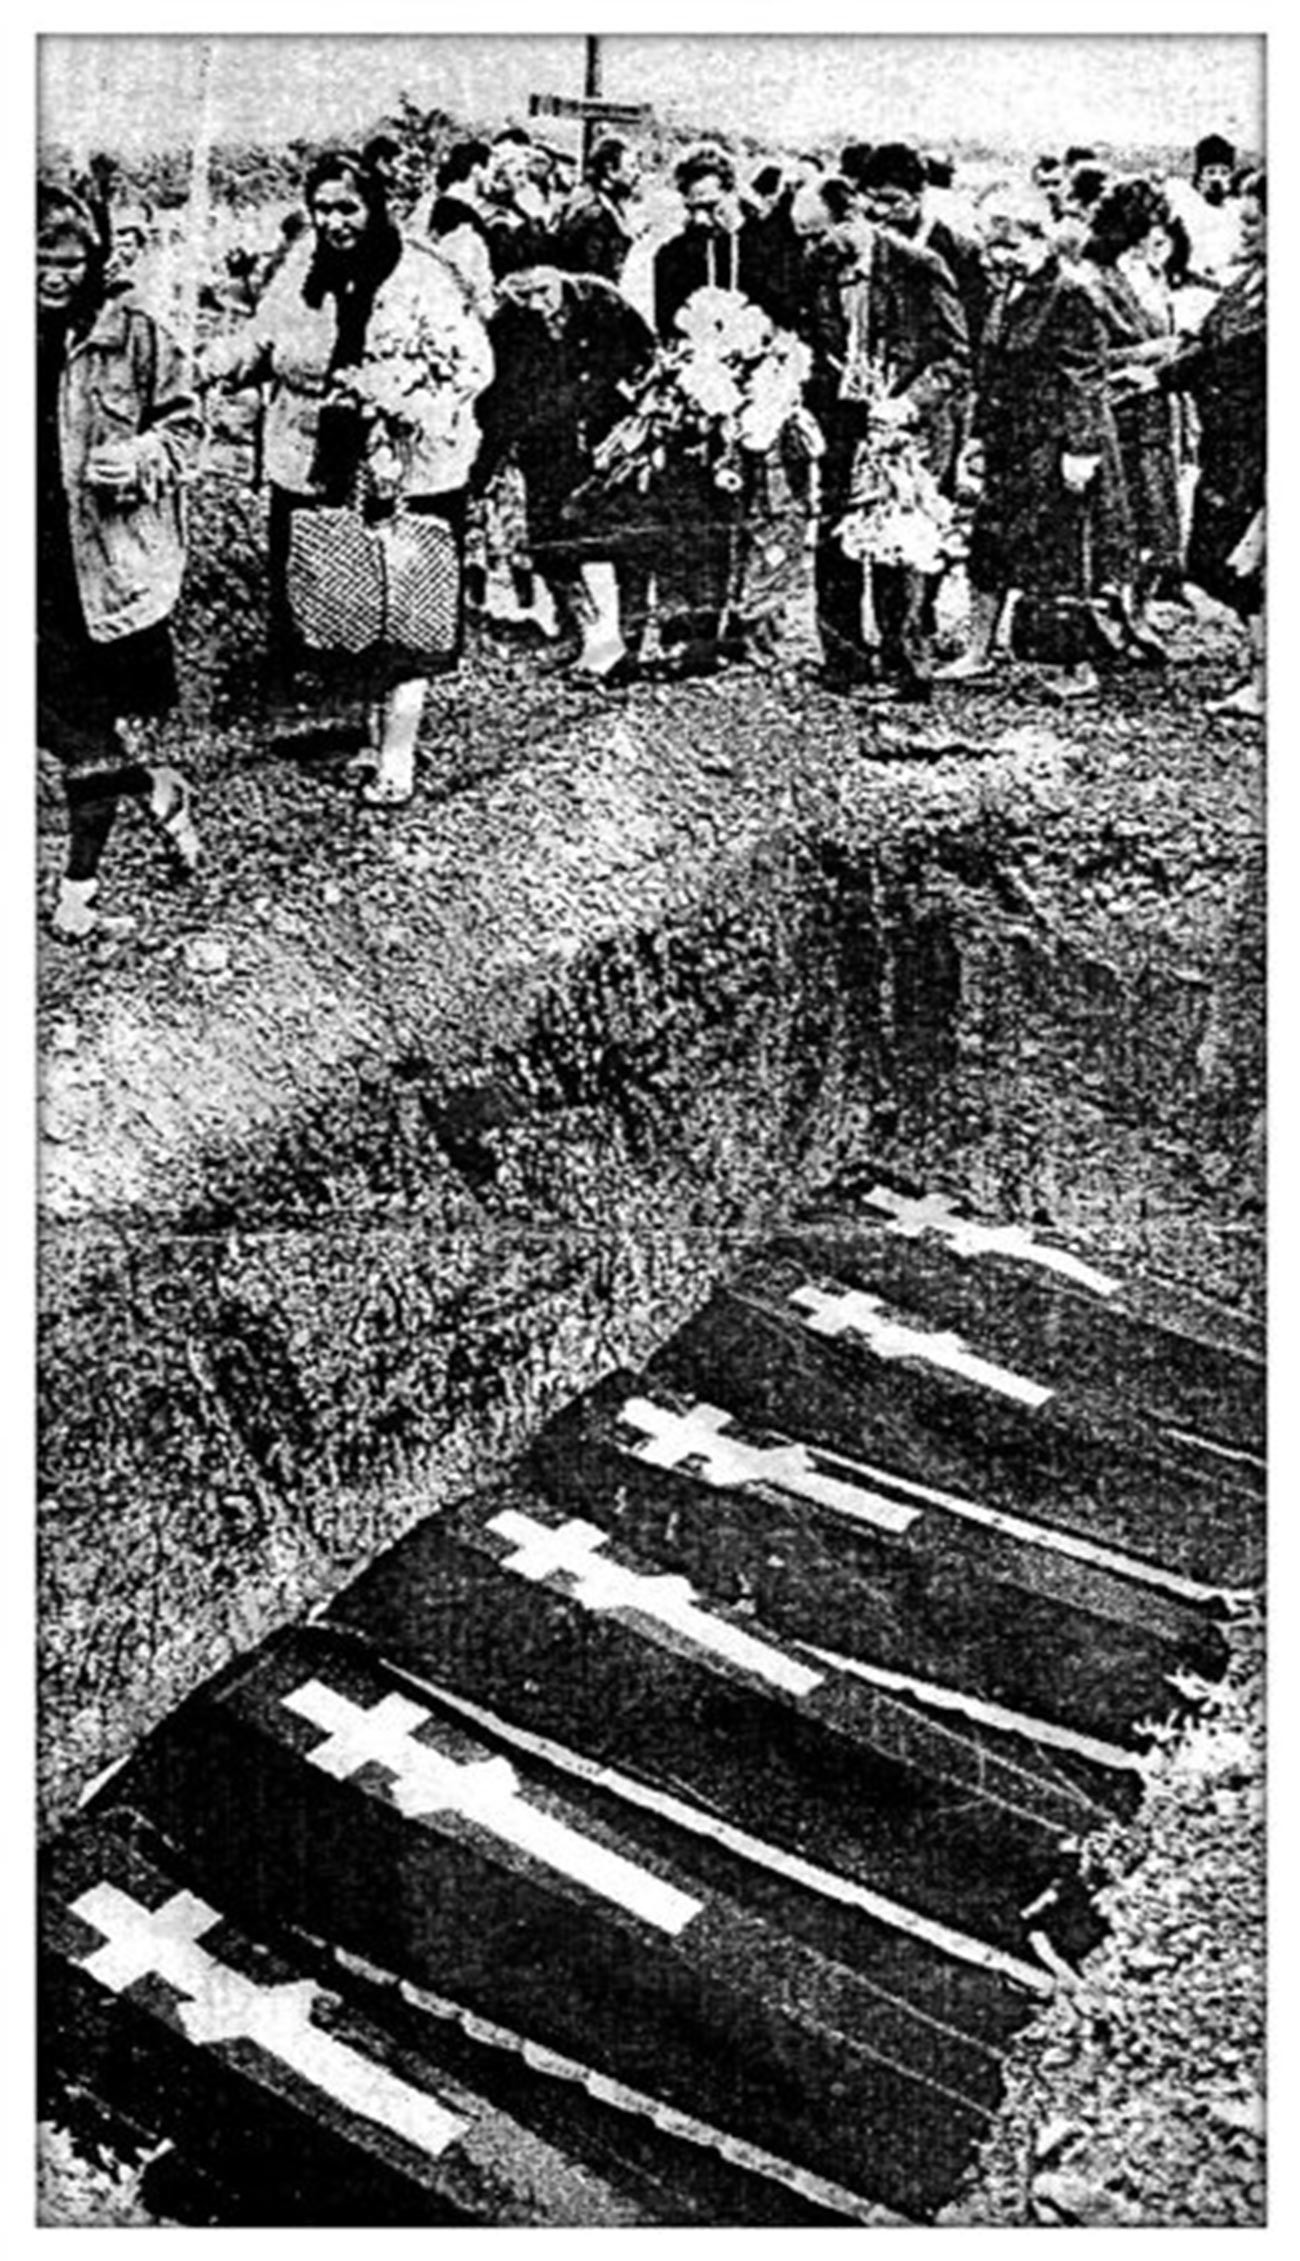 ノヴォチェルカスク虐殺事件の犠牲者の再埋葬、1994年